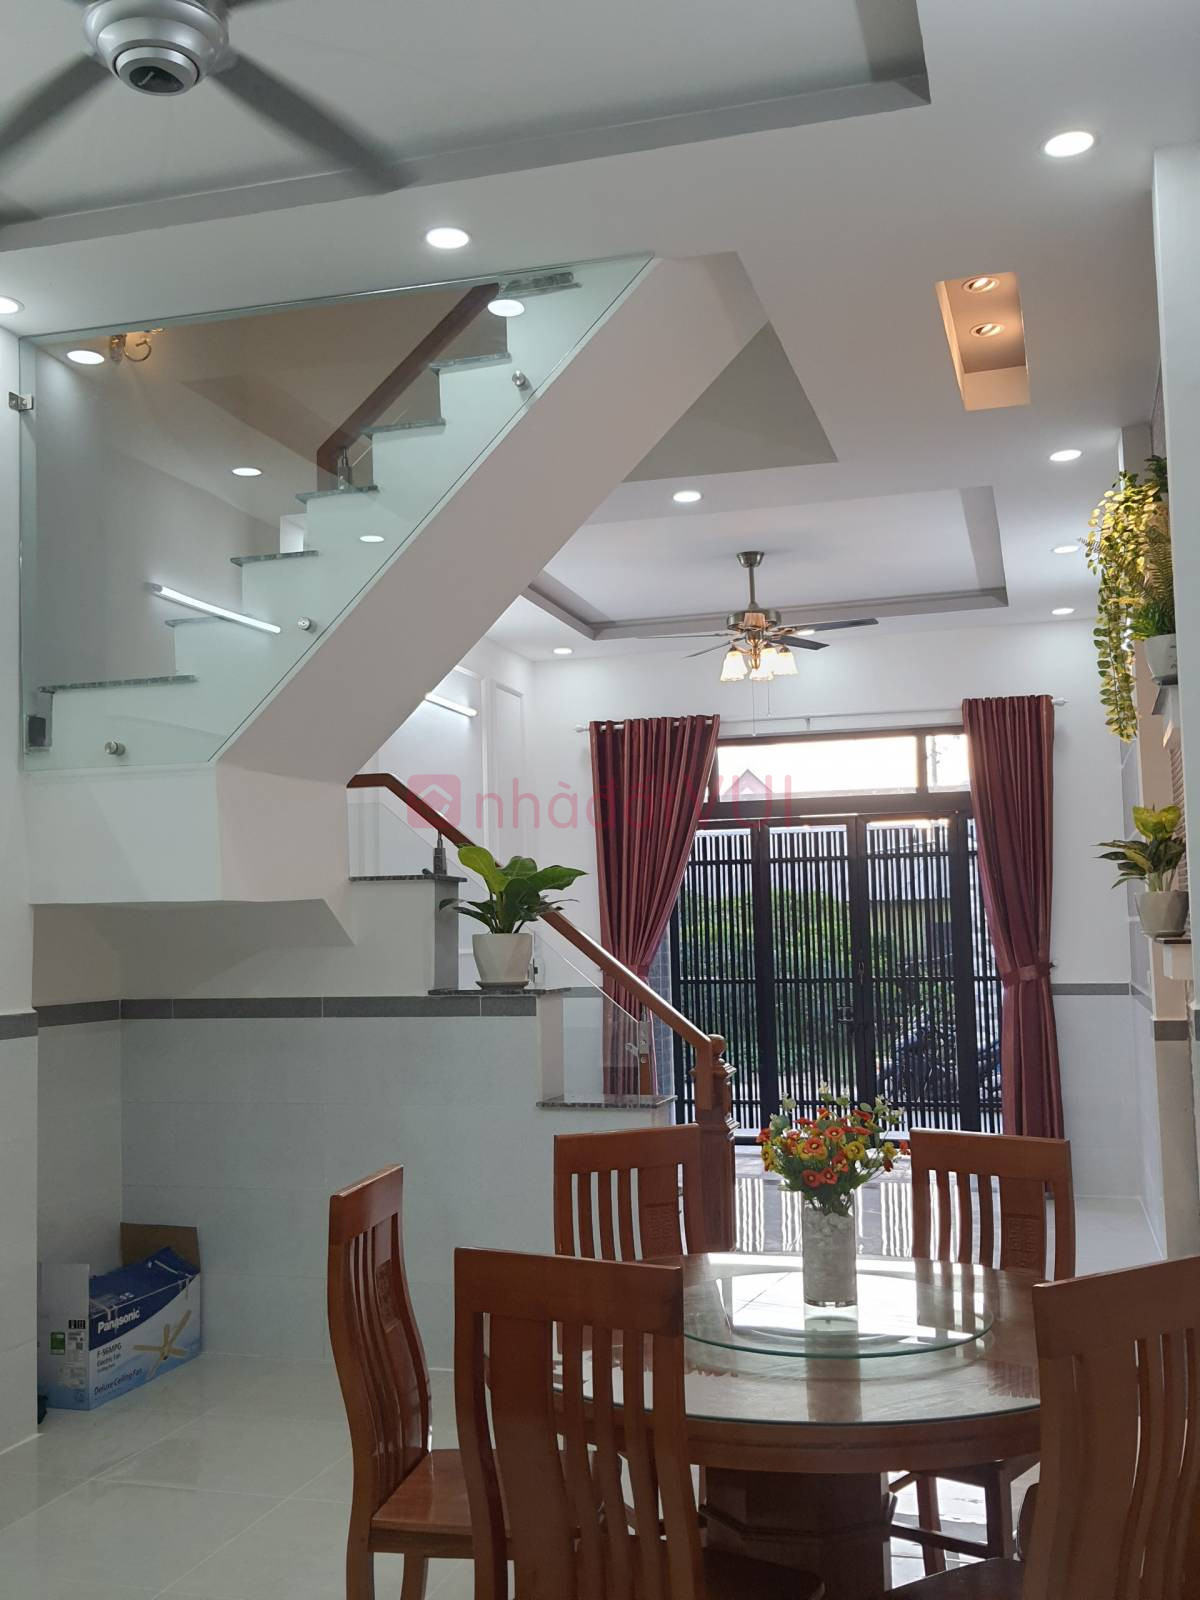 Bán nhà mới hoàn thiện đường số 6 Linh Xuân, Thủ Đức, DT 200m